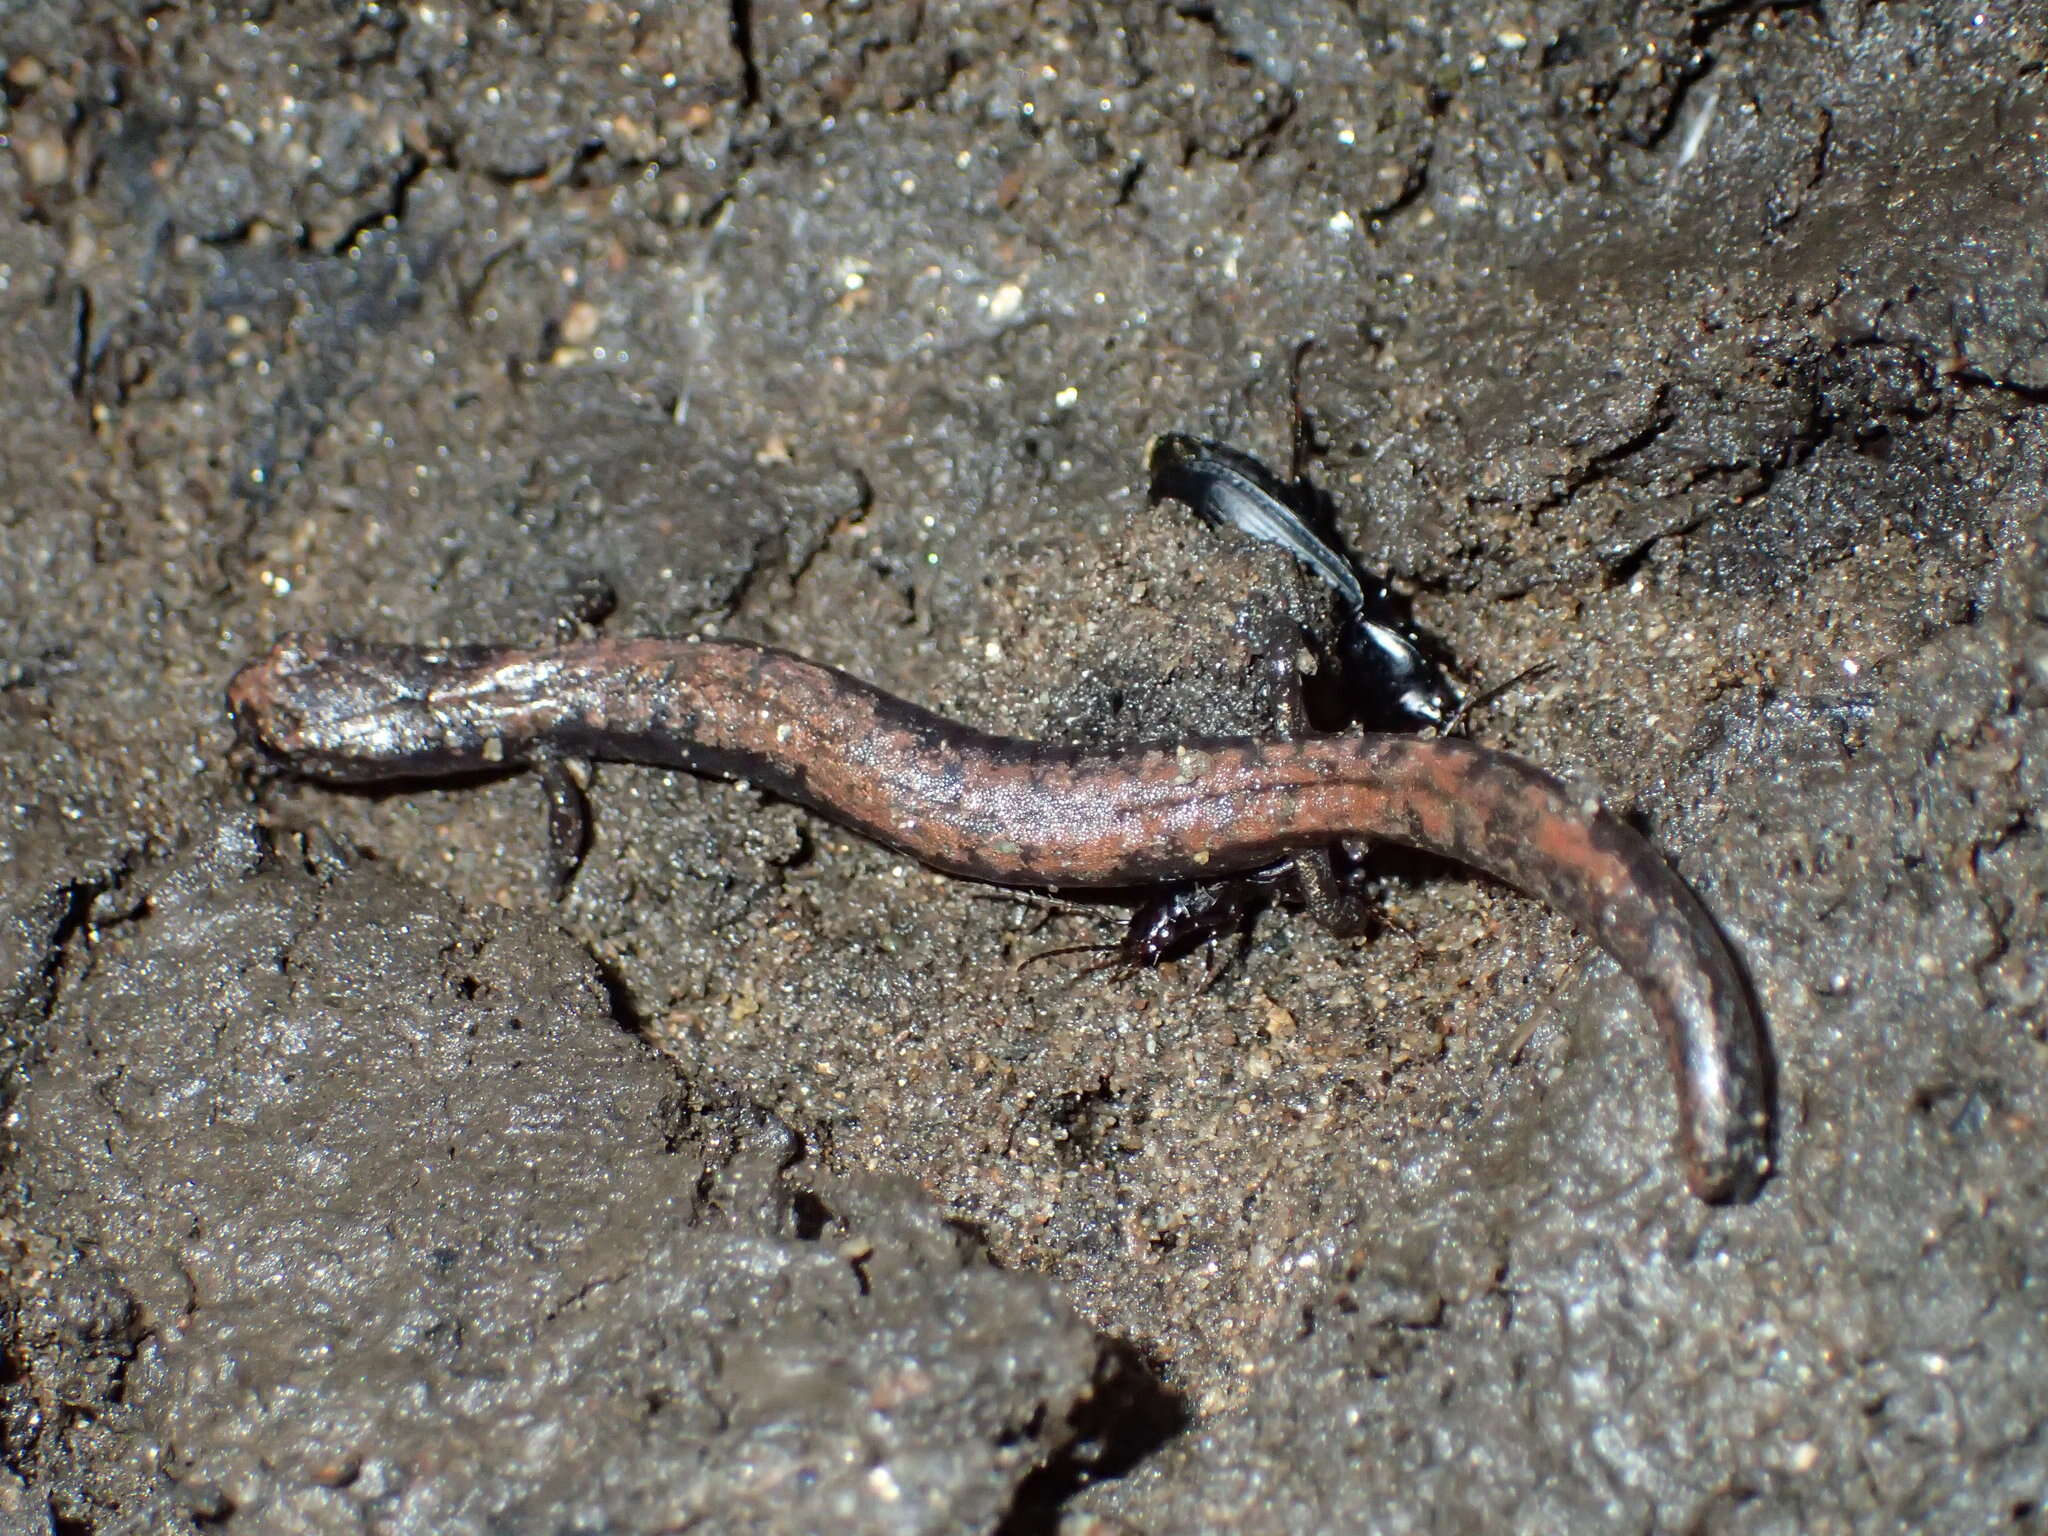 Image of Greenhorn Mountains Slender Salamander